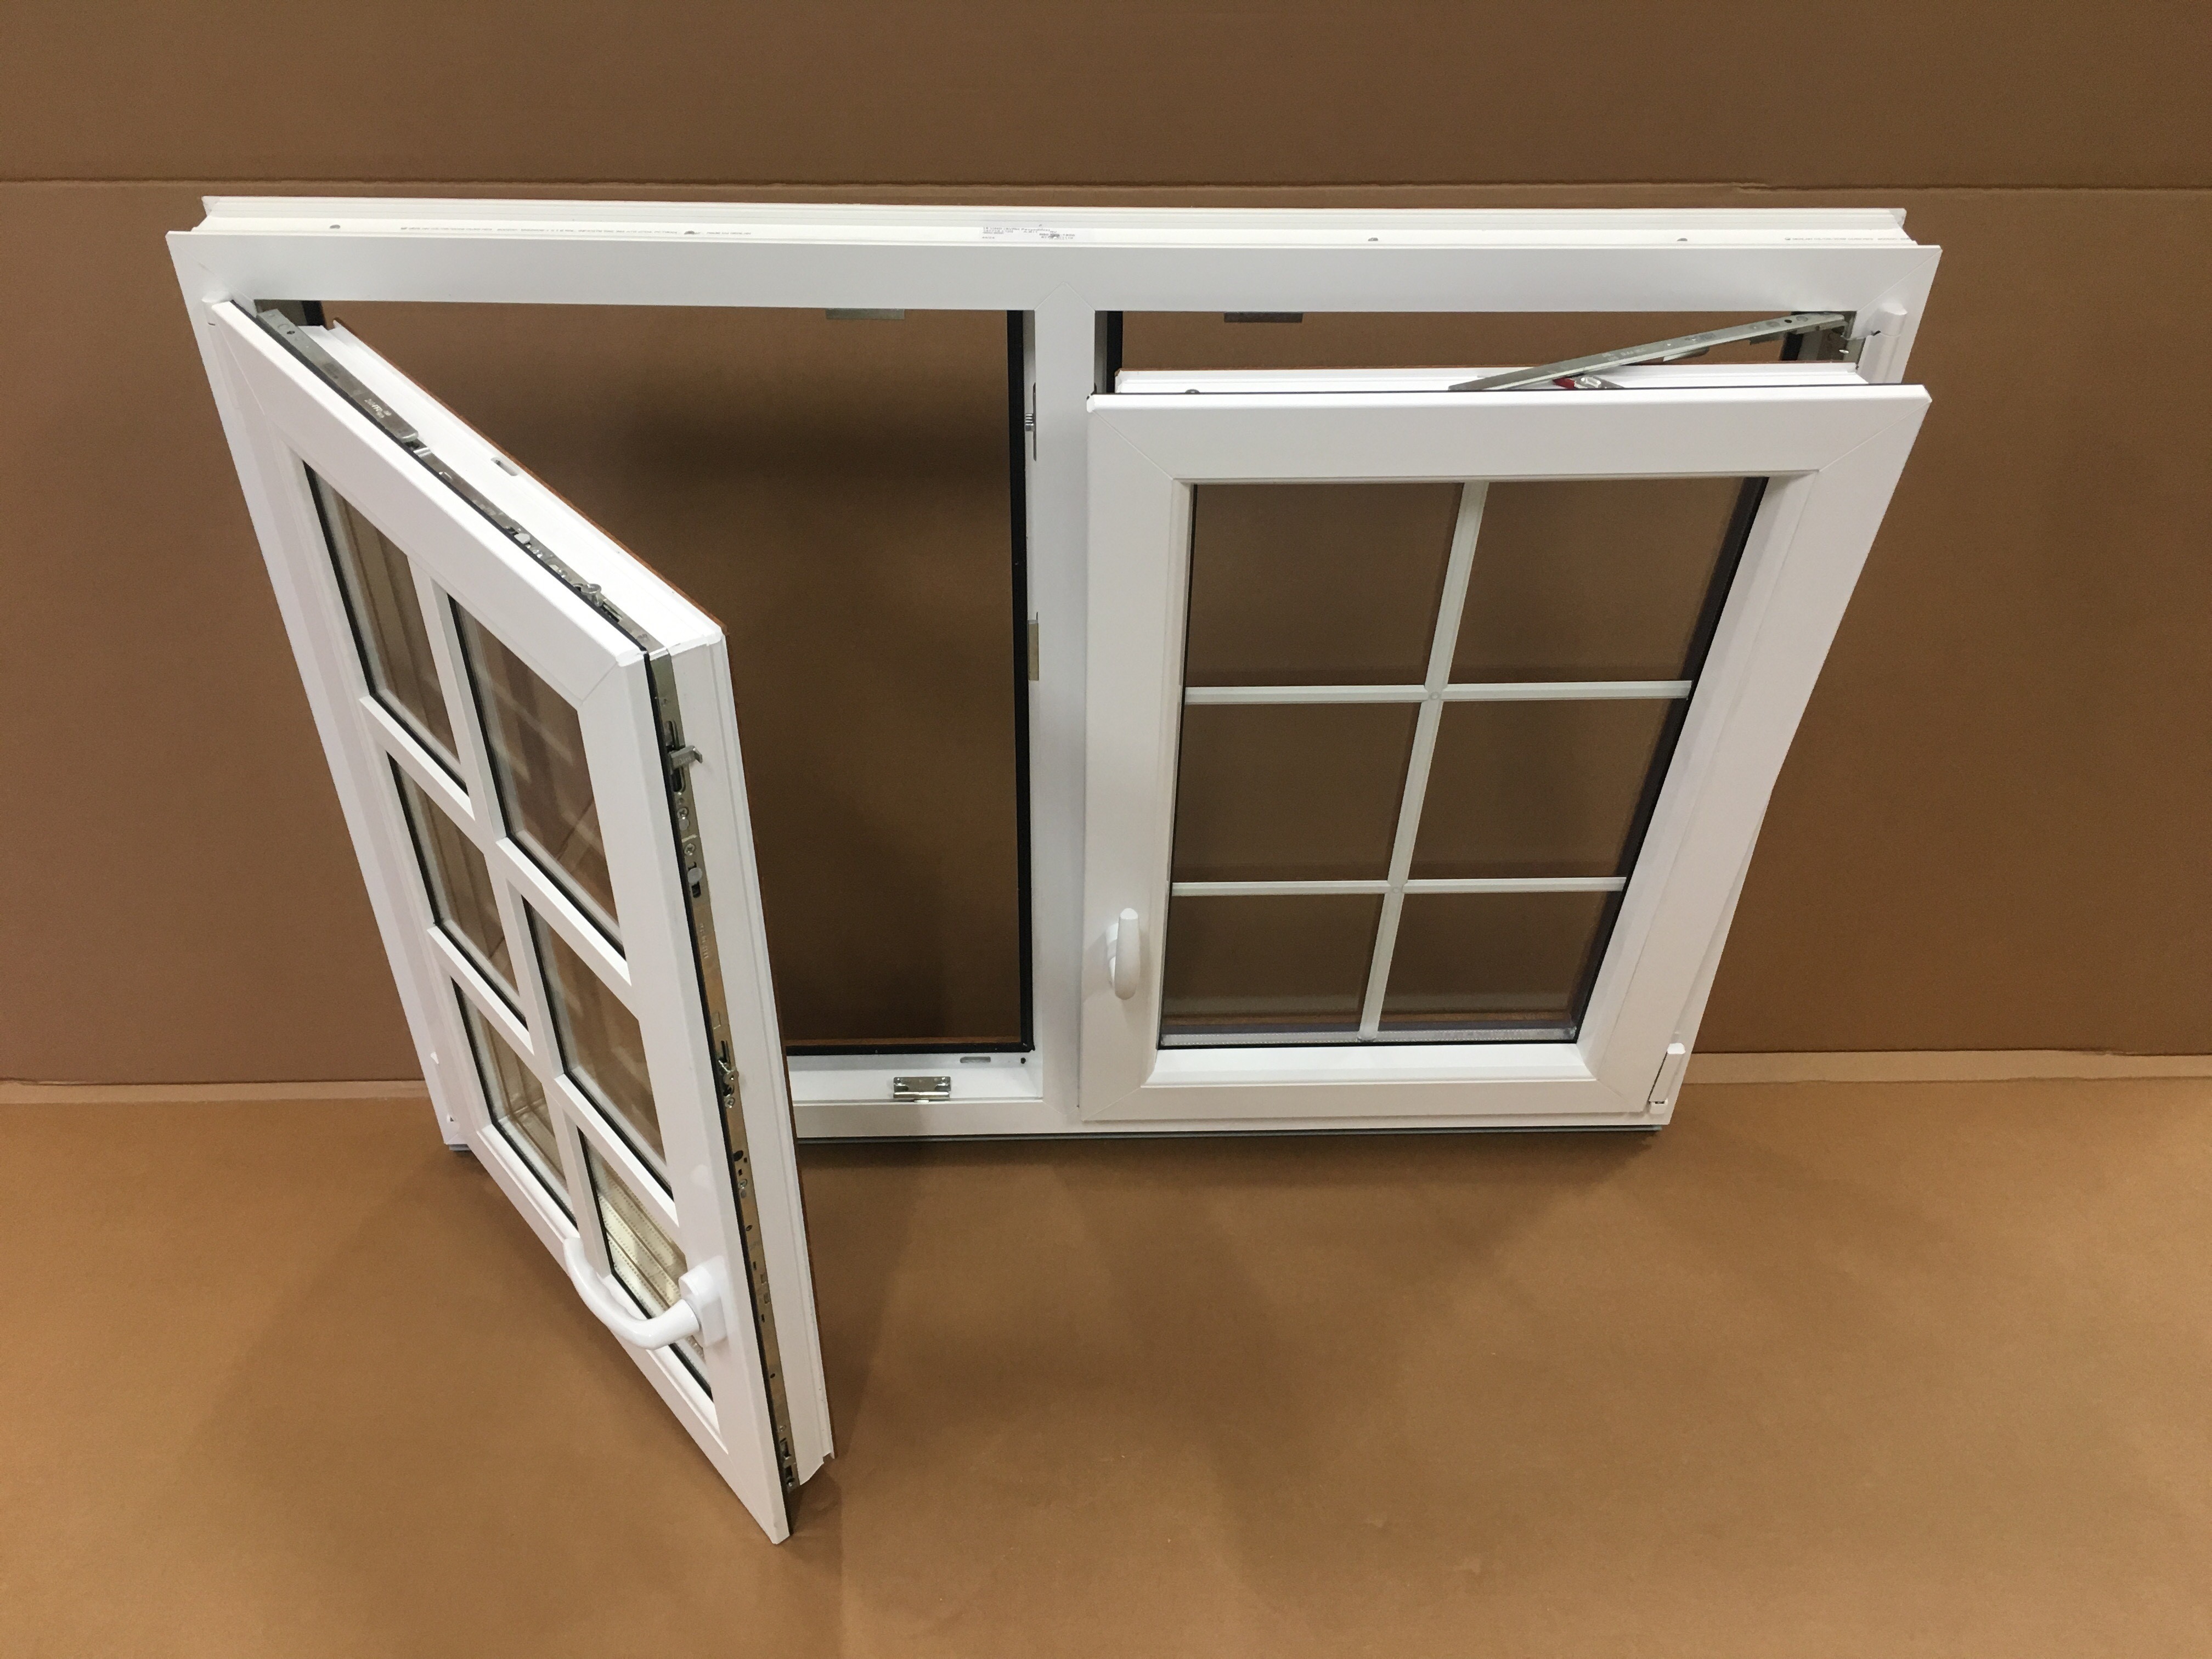 PVC double window